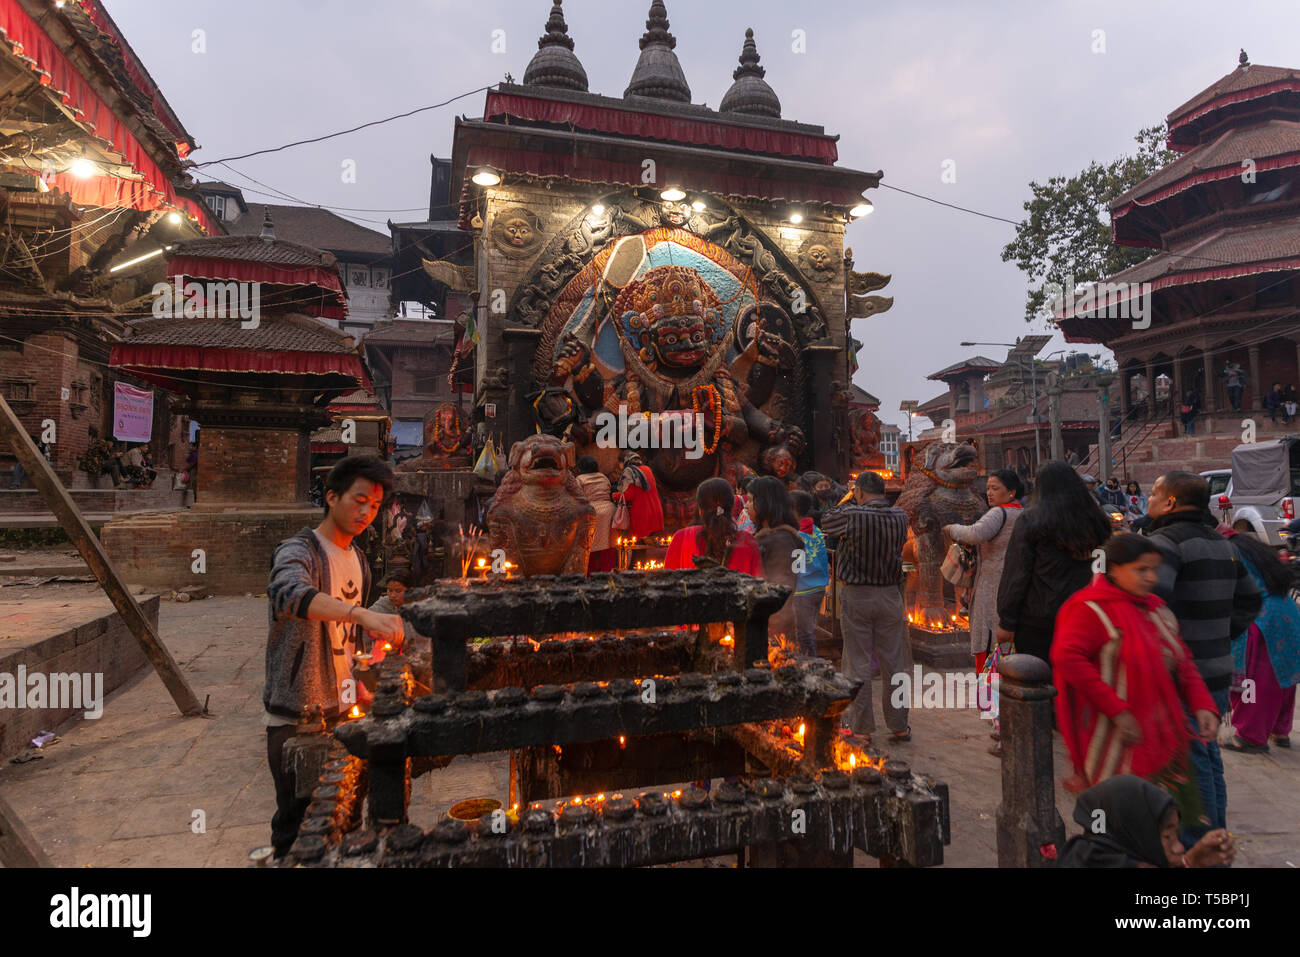 KATHMANDU, Nepal - MÄRZ 30, 2019: Hanuman bas-relief Licht durch künstliche Beleuchtung, in der Dämmerung am Durbar Square in Kathmandu getroffen Stockfoto